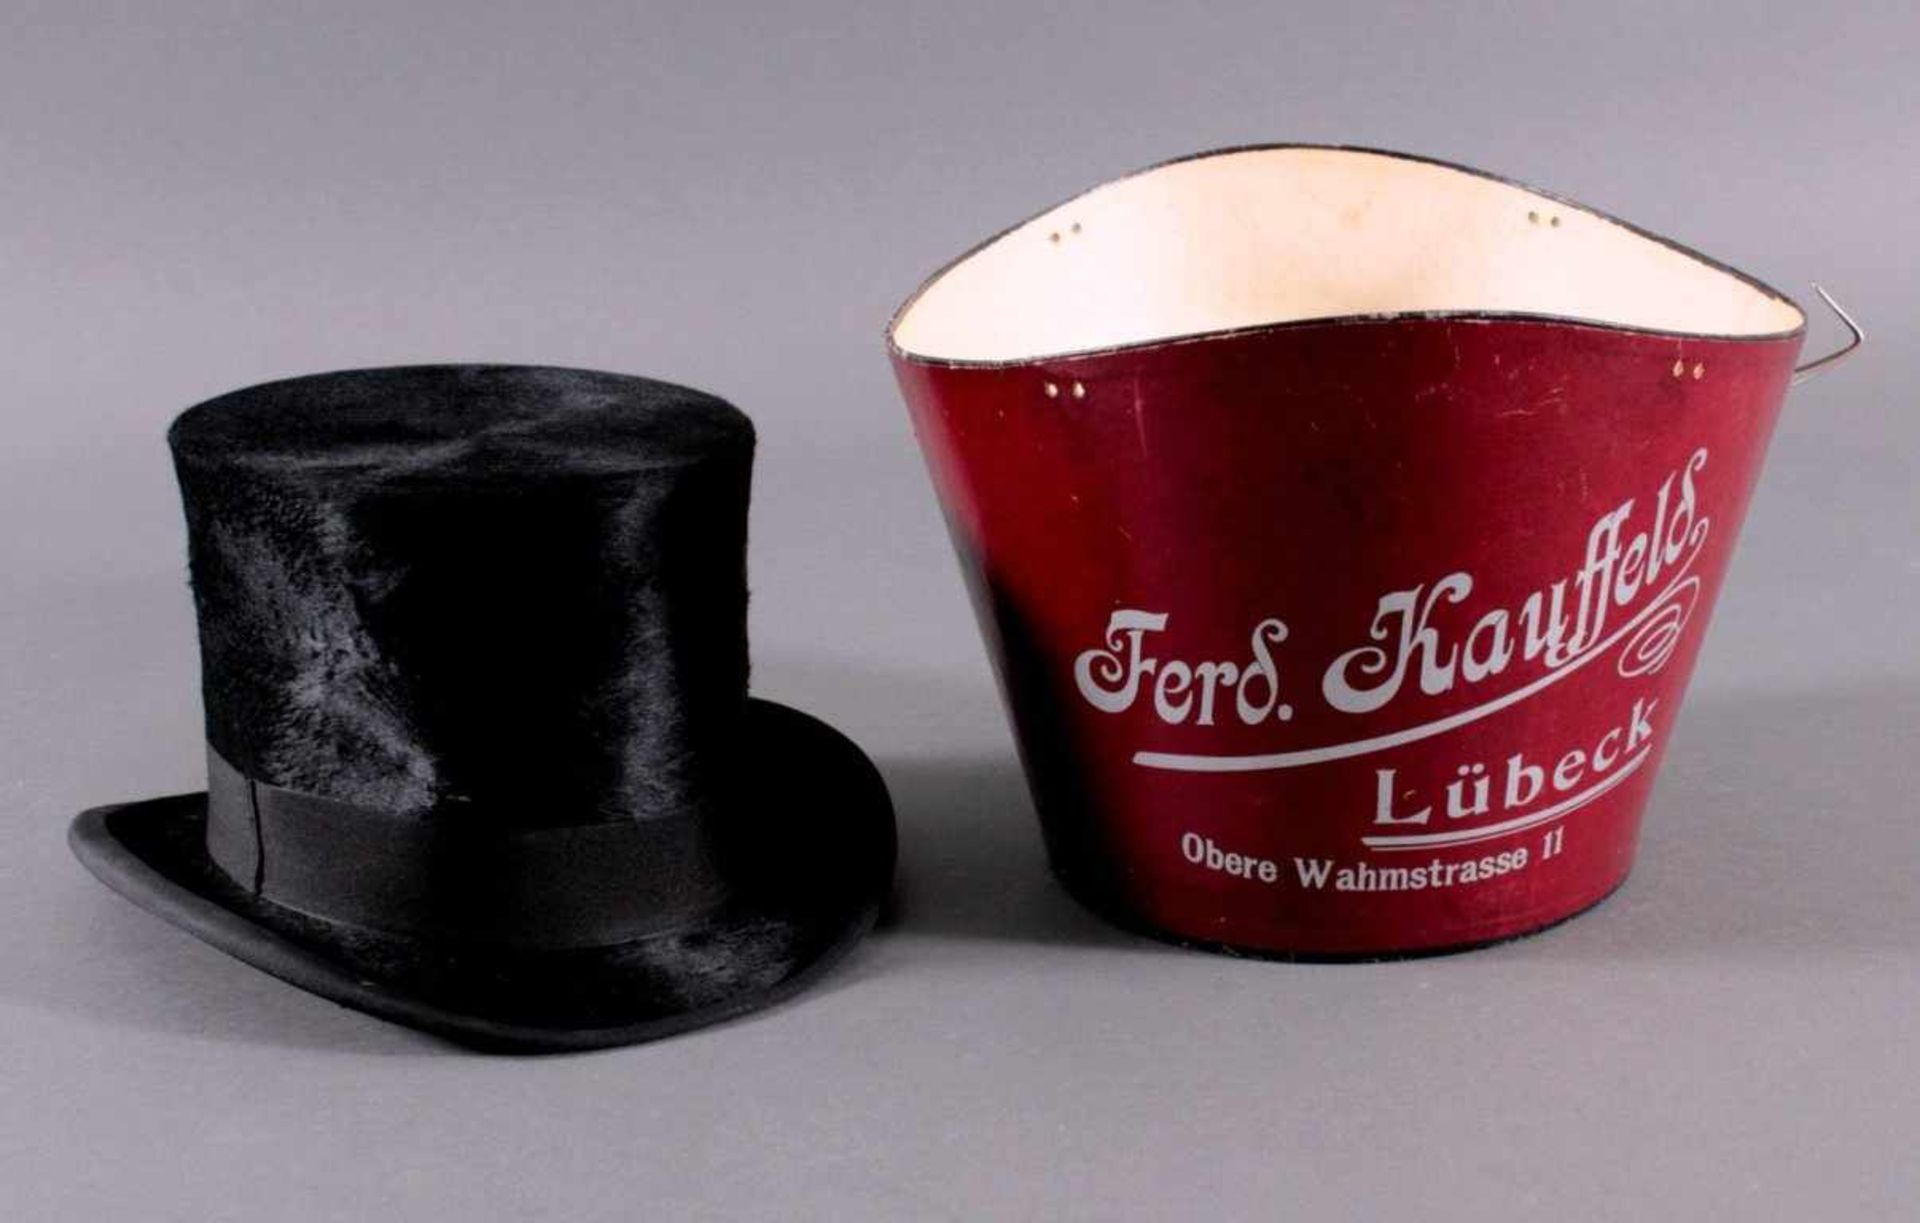 Zylinder um 1900 in HutschachtelZylinder und Hutschachtel mit Verkäuferbezeichnung Ferd.Kauffeld